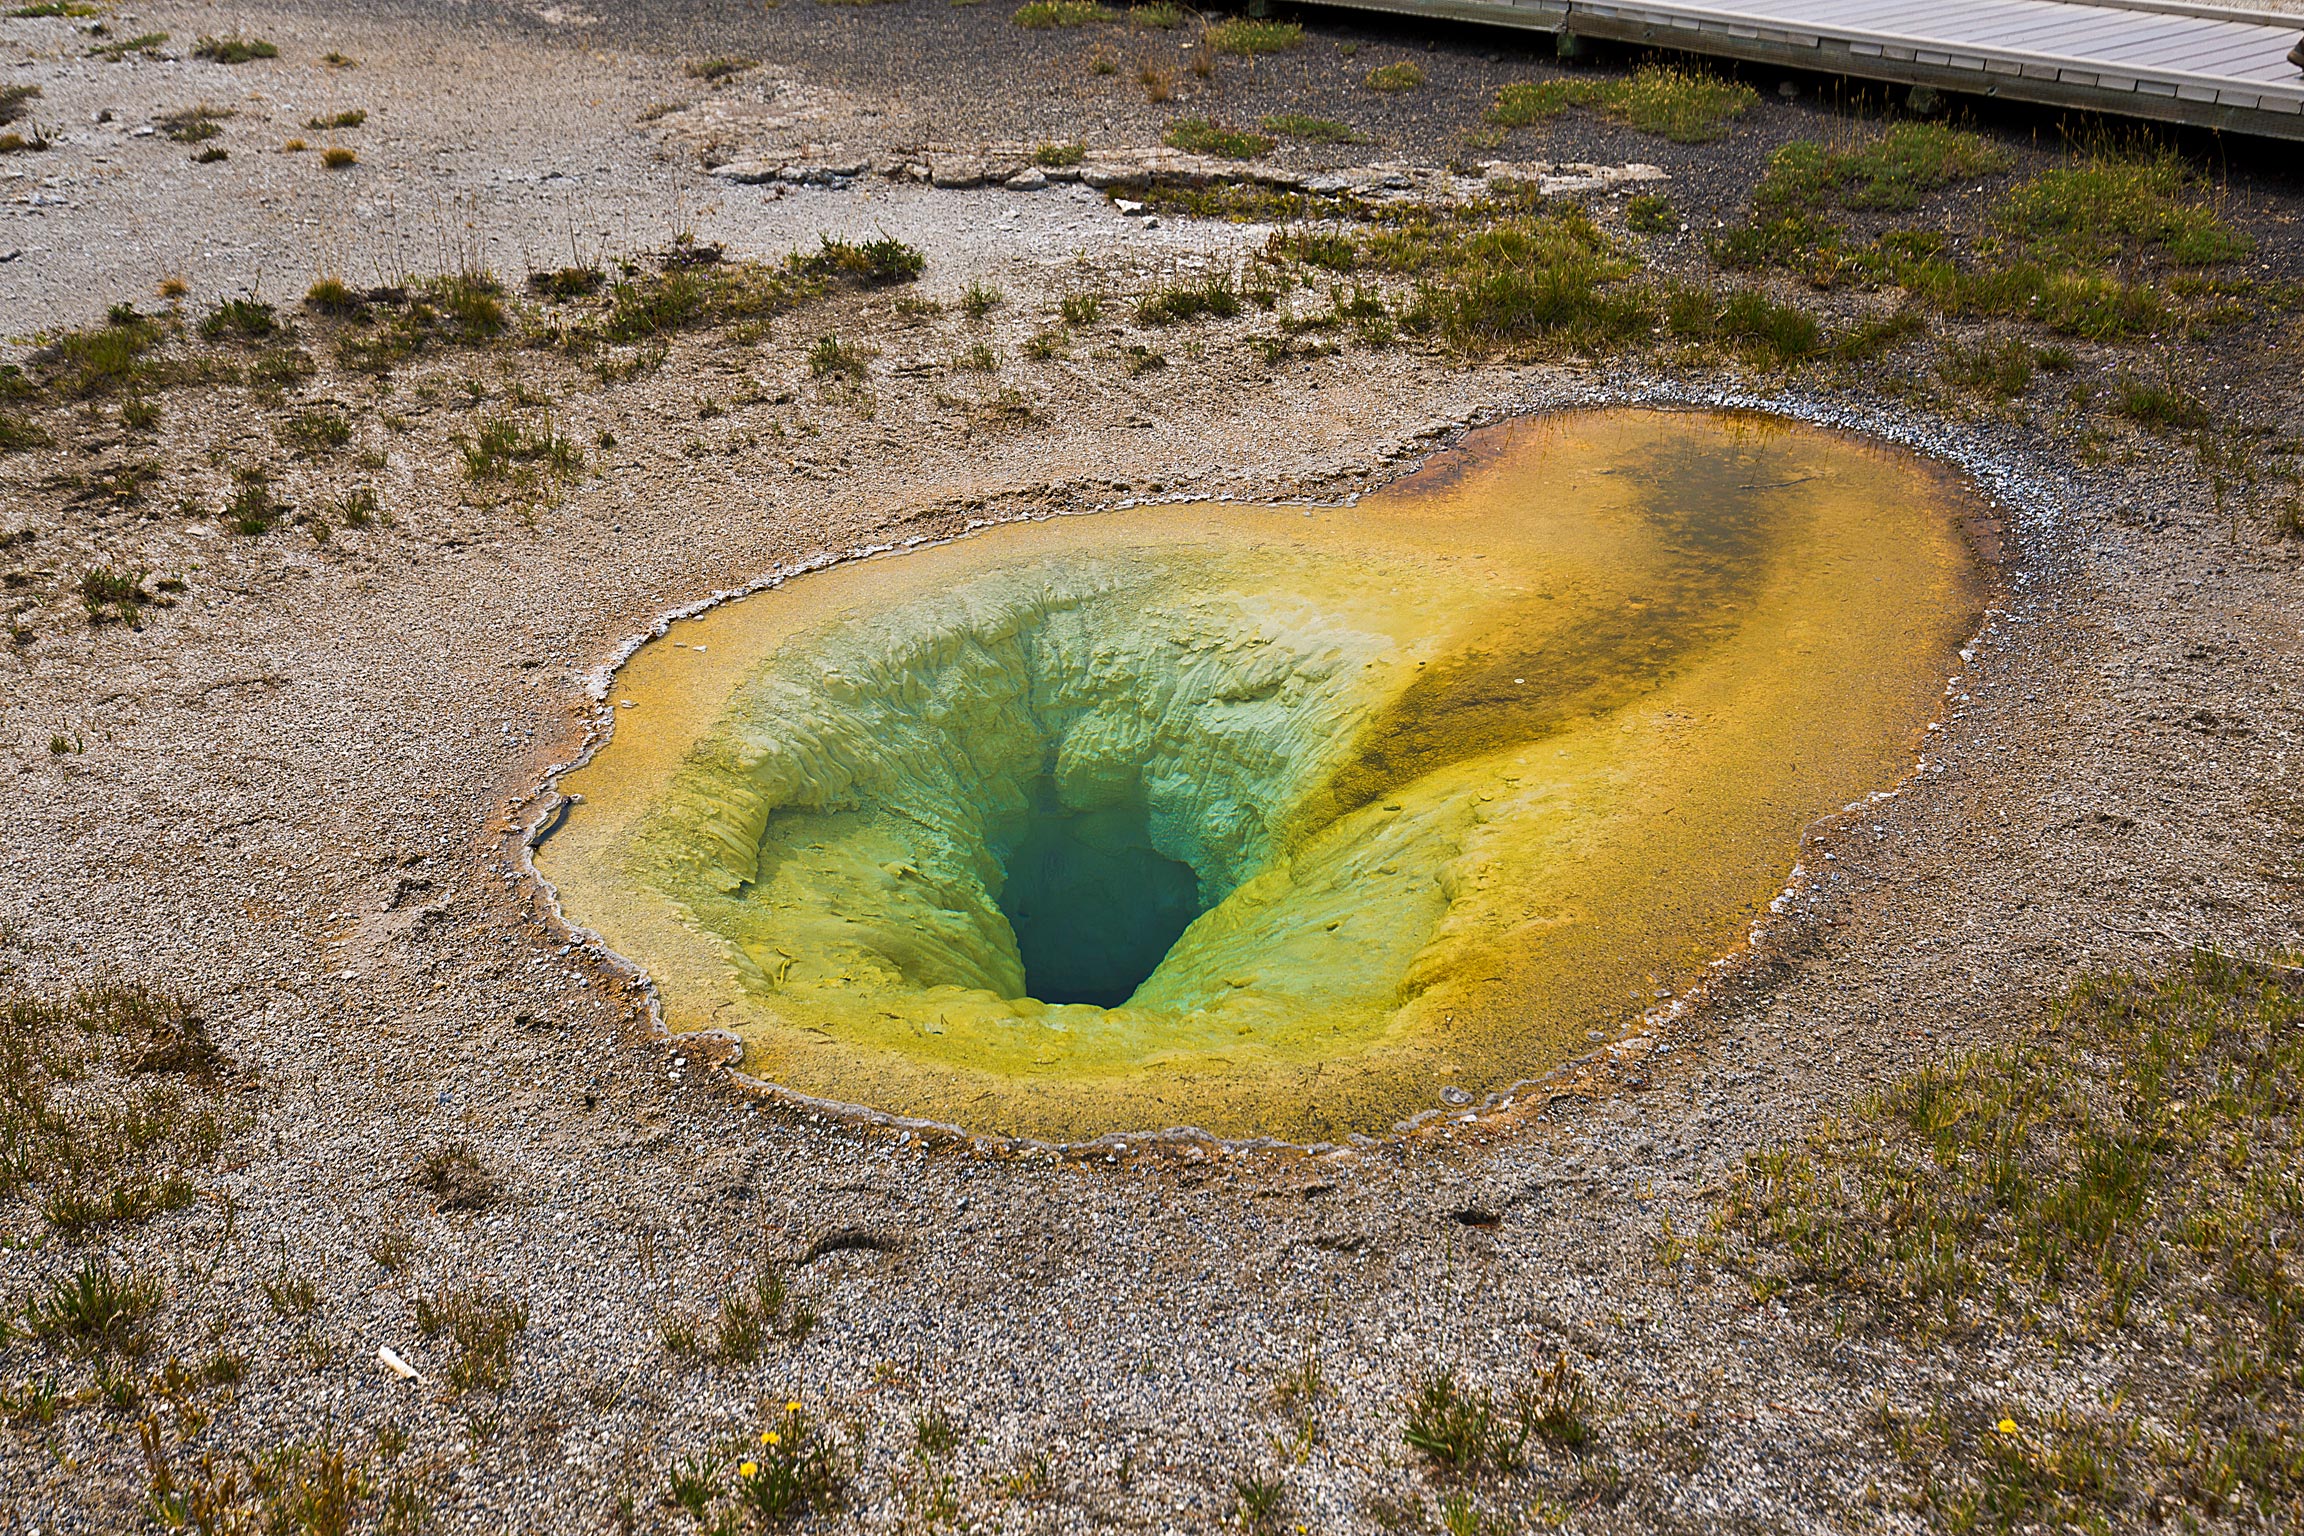 The "Belgian Pool" Yellowstone